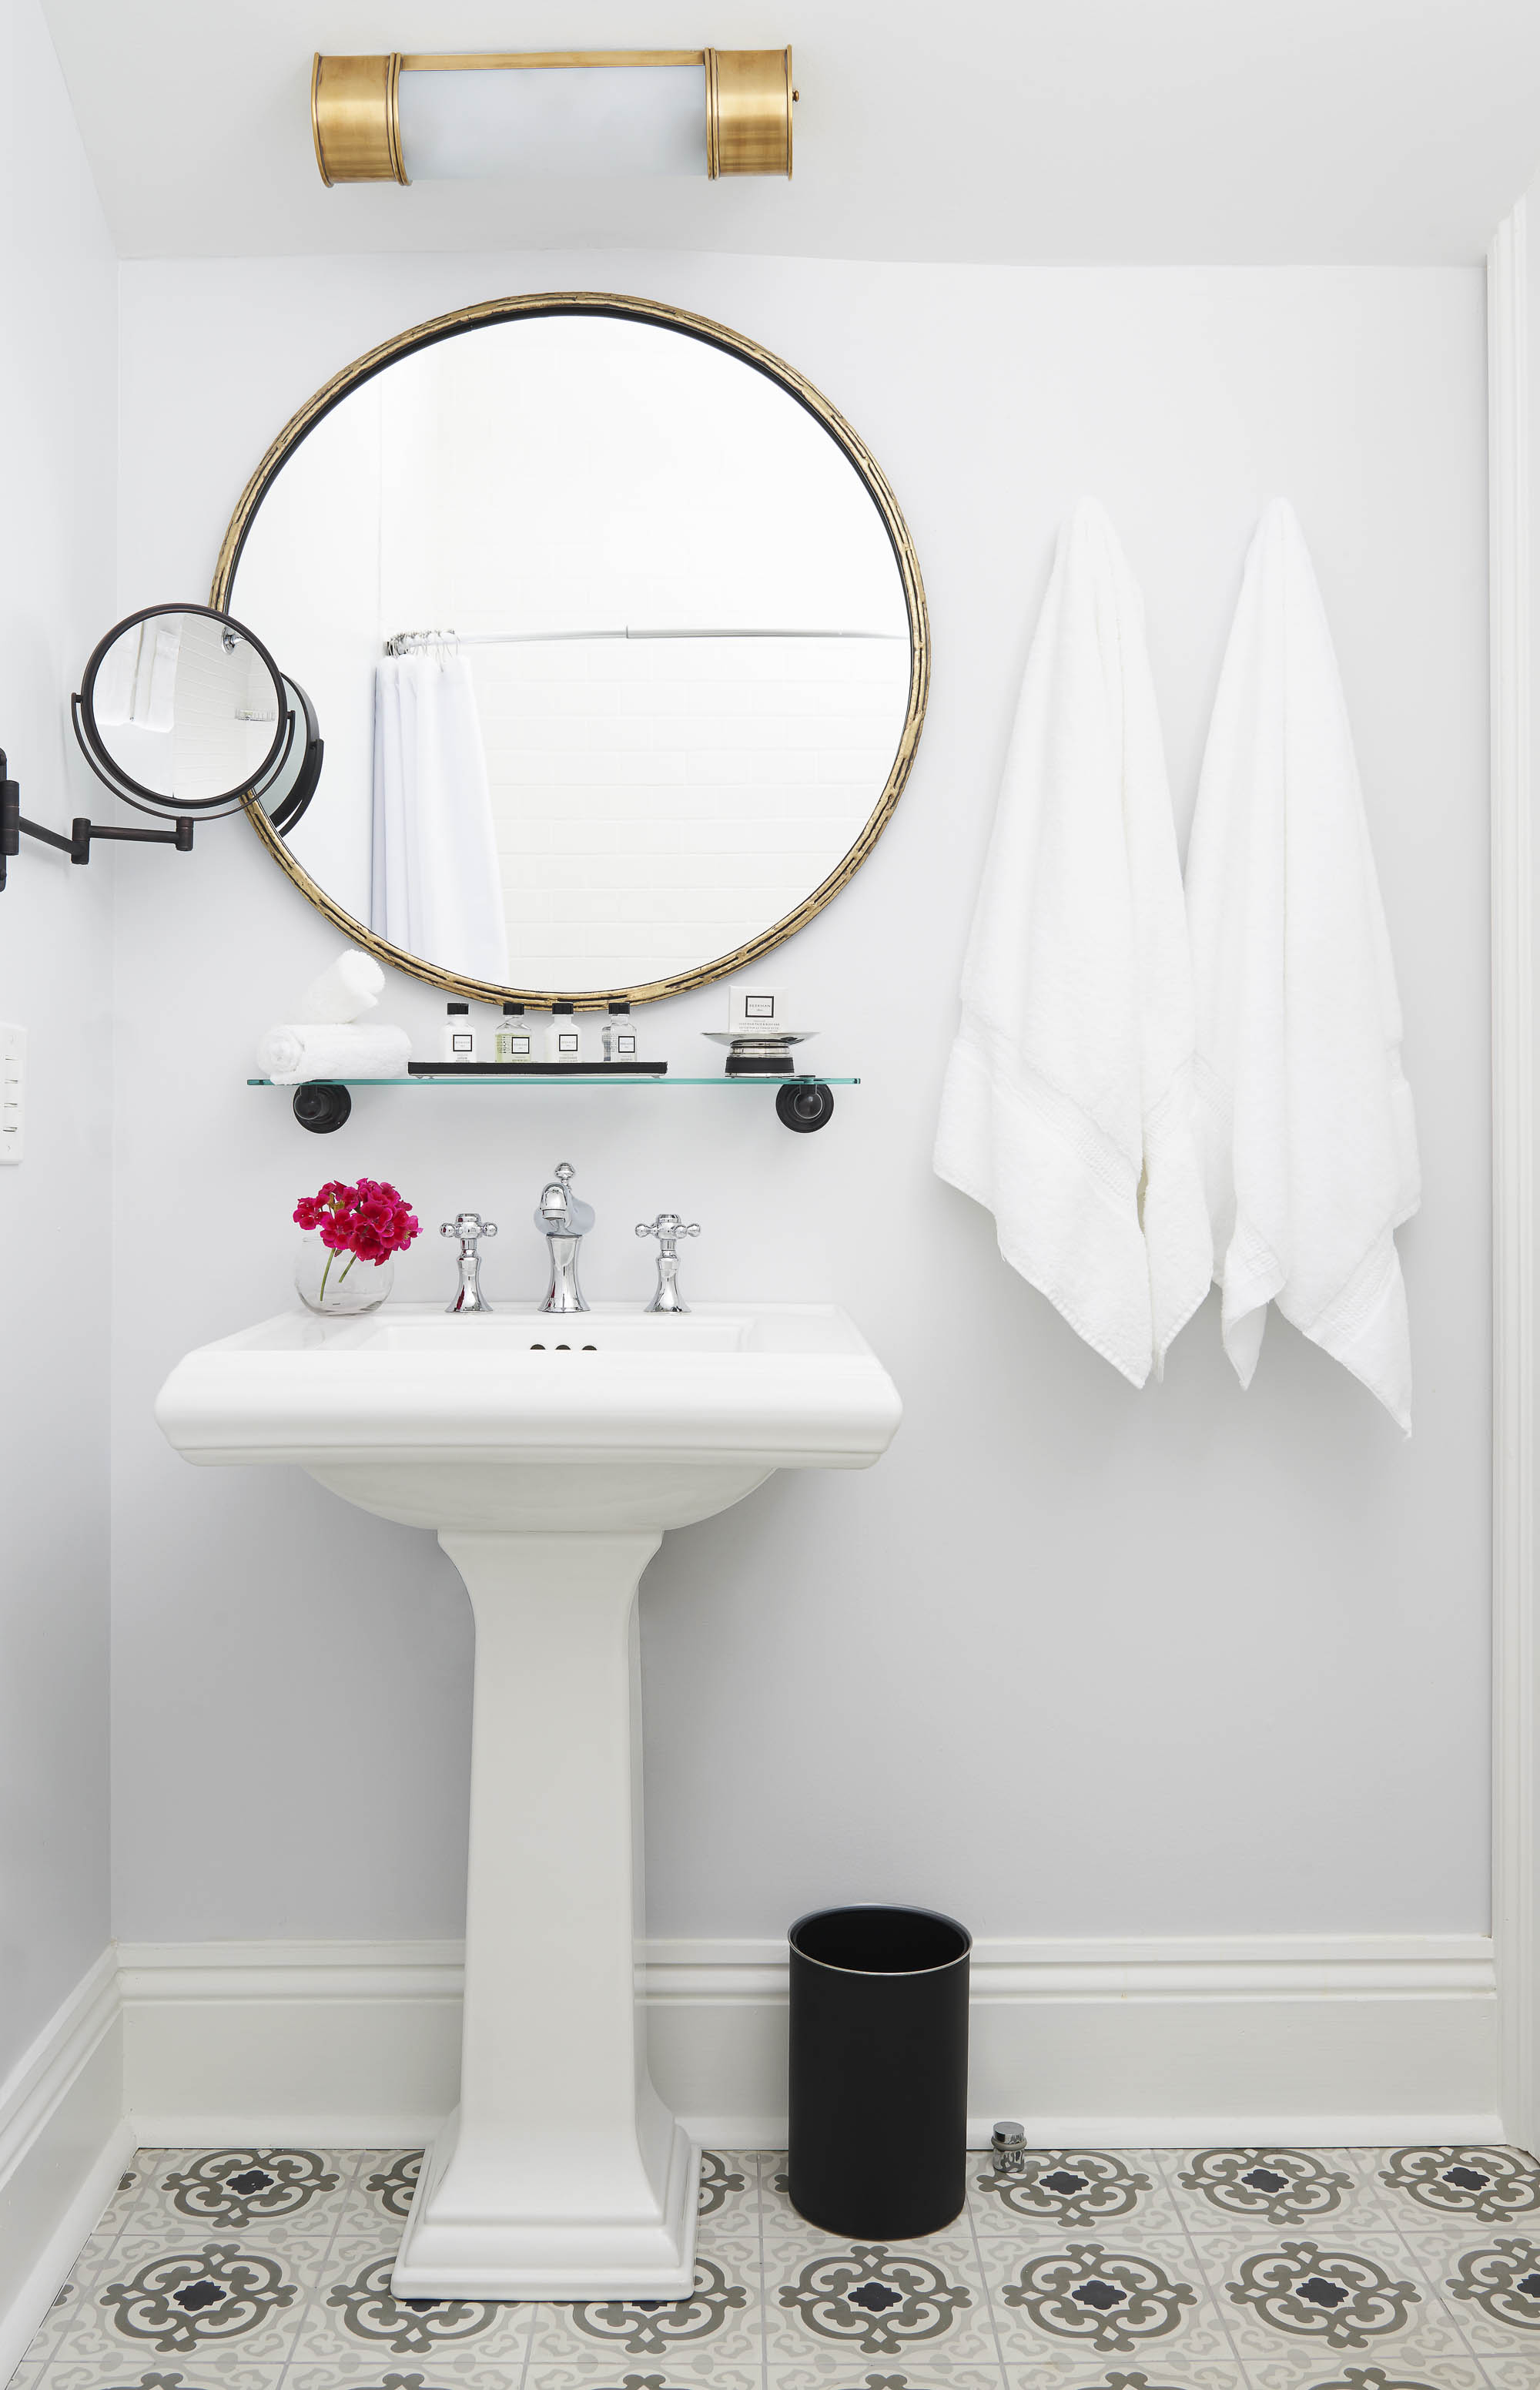 White bathroom sink with round mirror